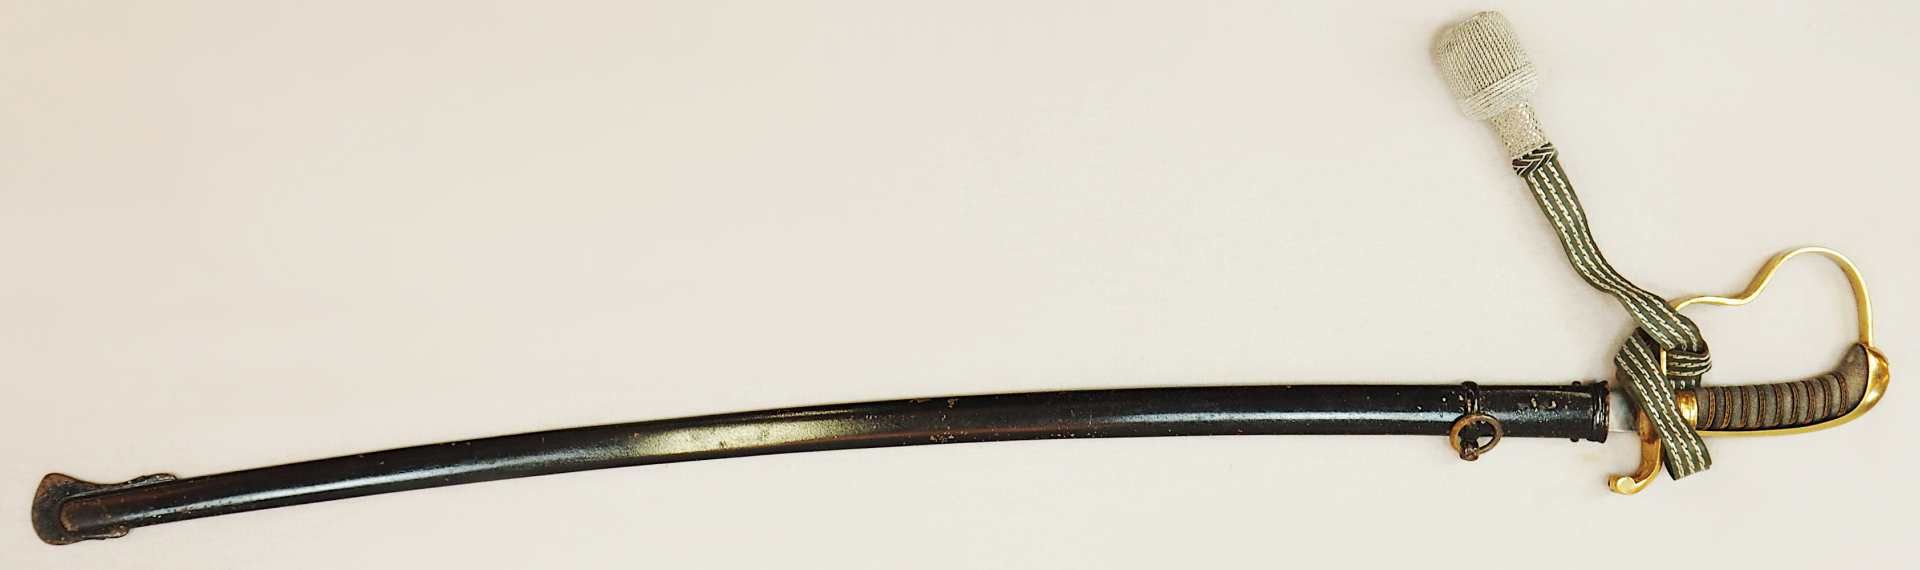 1 Säbel wohl 1. Hälfte 20. Jh. leicht gebogene Klinge mit Inschrift "In Treue fest", - Bild 2 aus 4